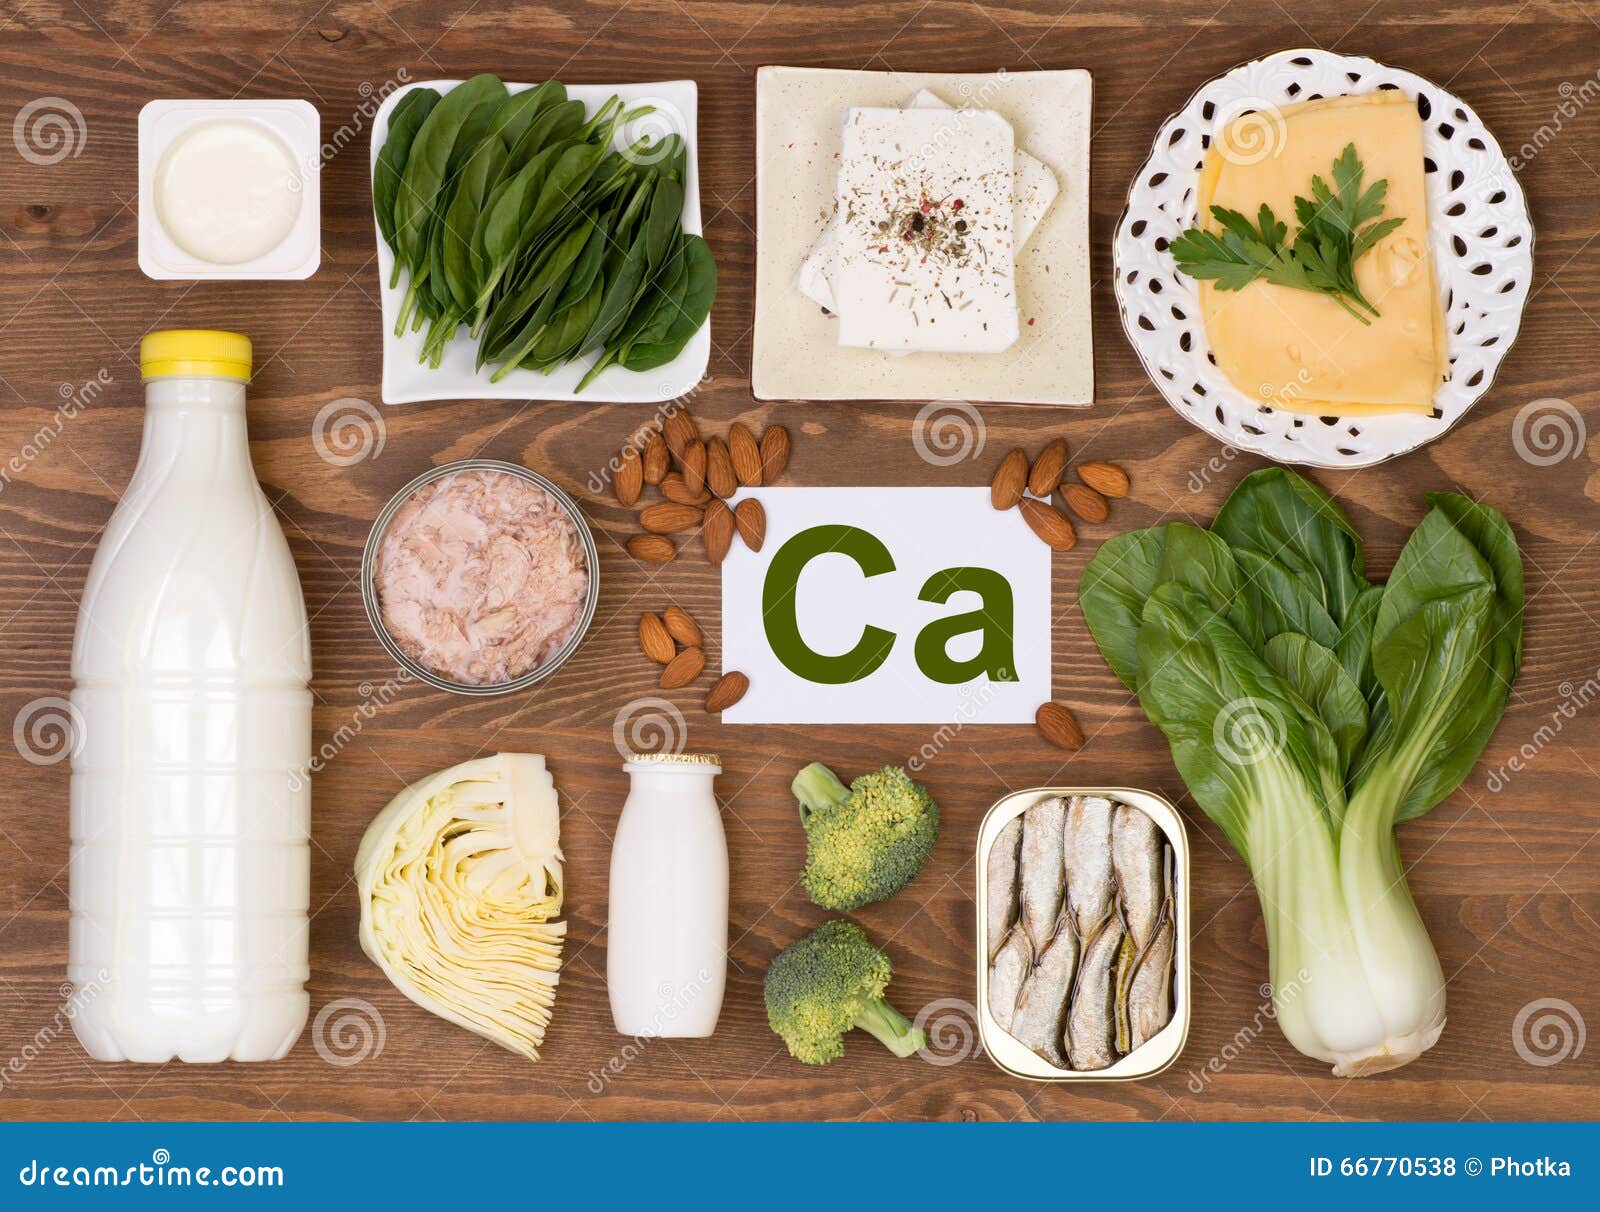 food containing calcium